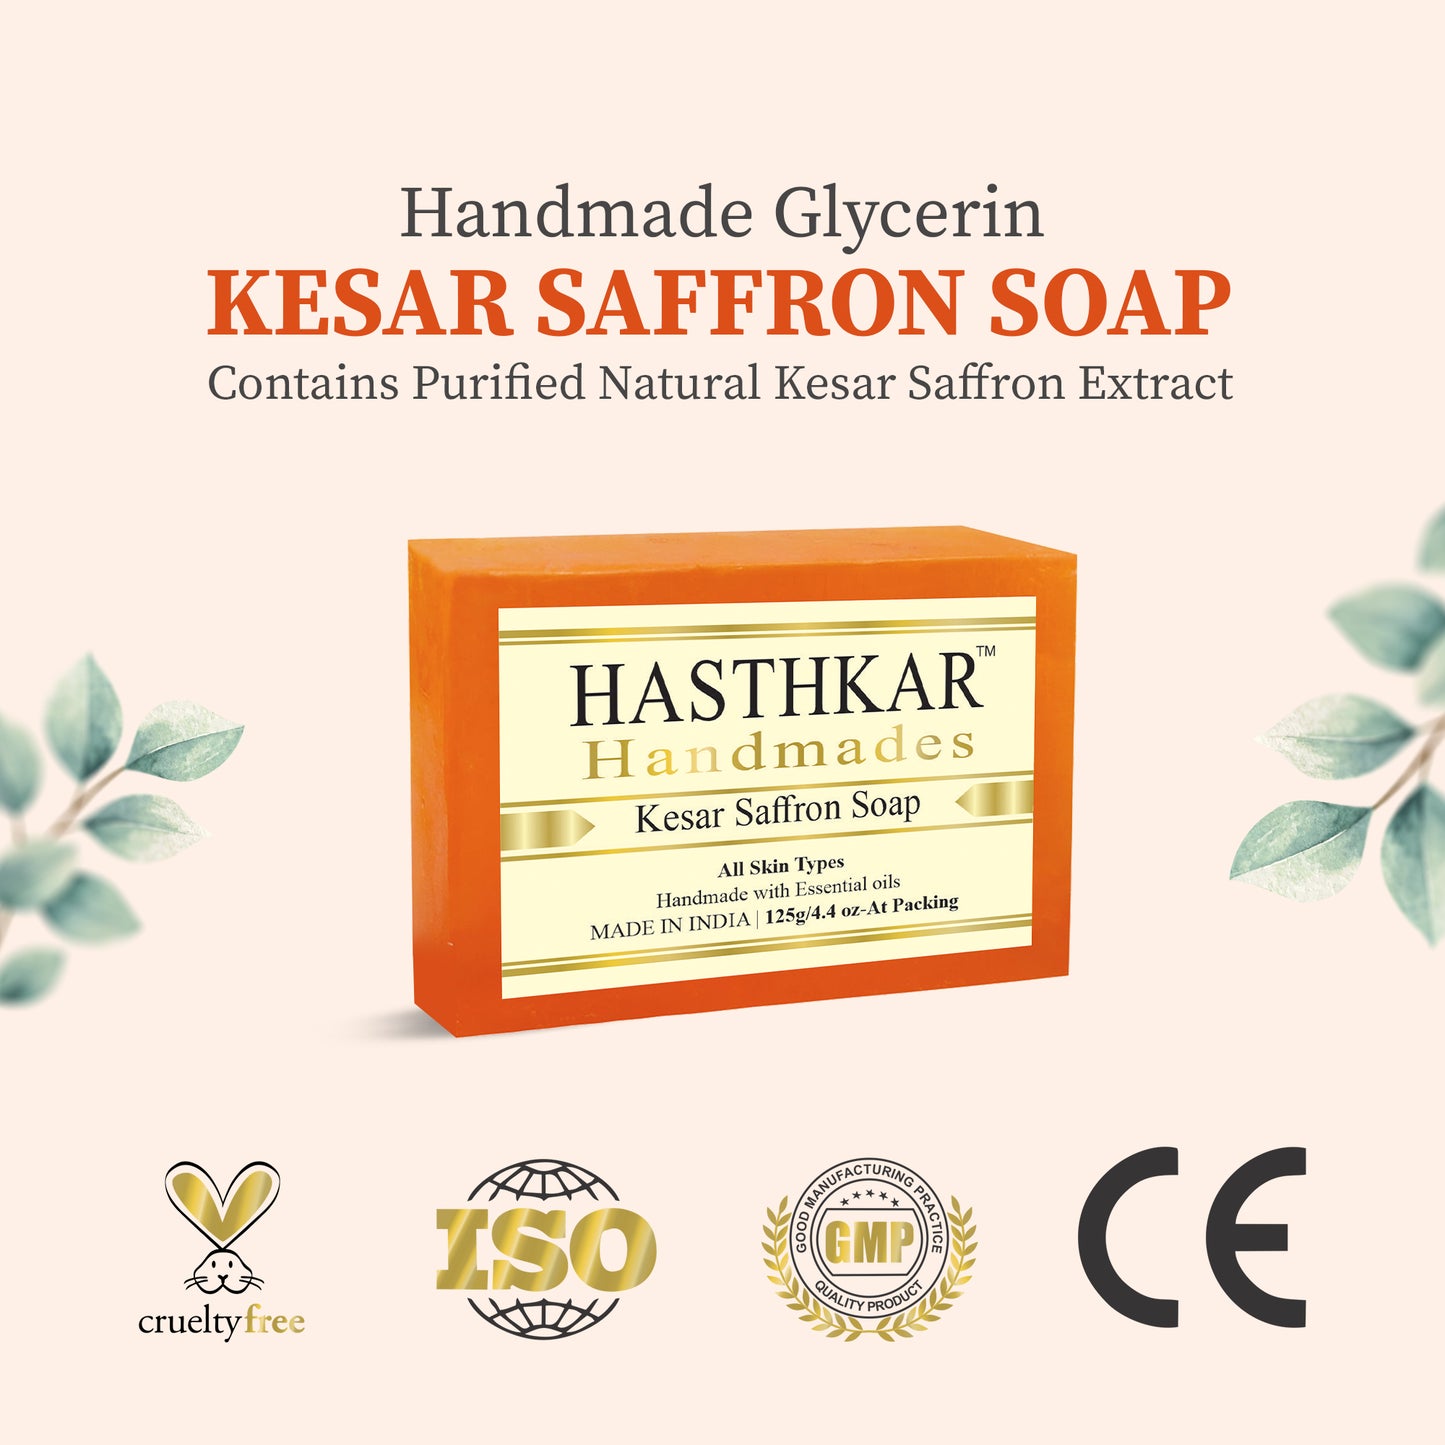 Hasthkar Handmade Bathing Kesar Saffron Soap